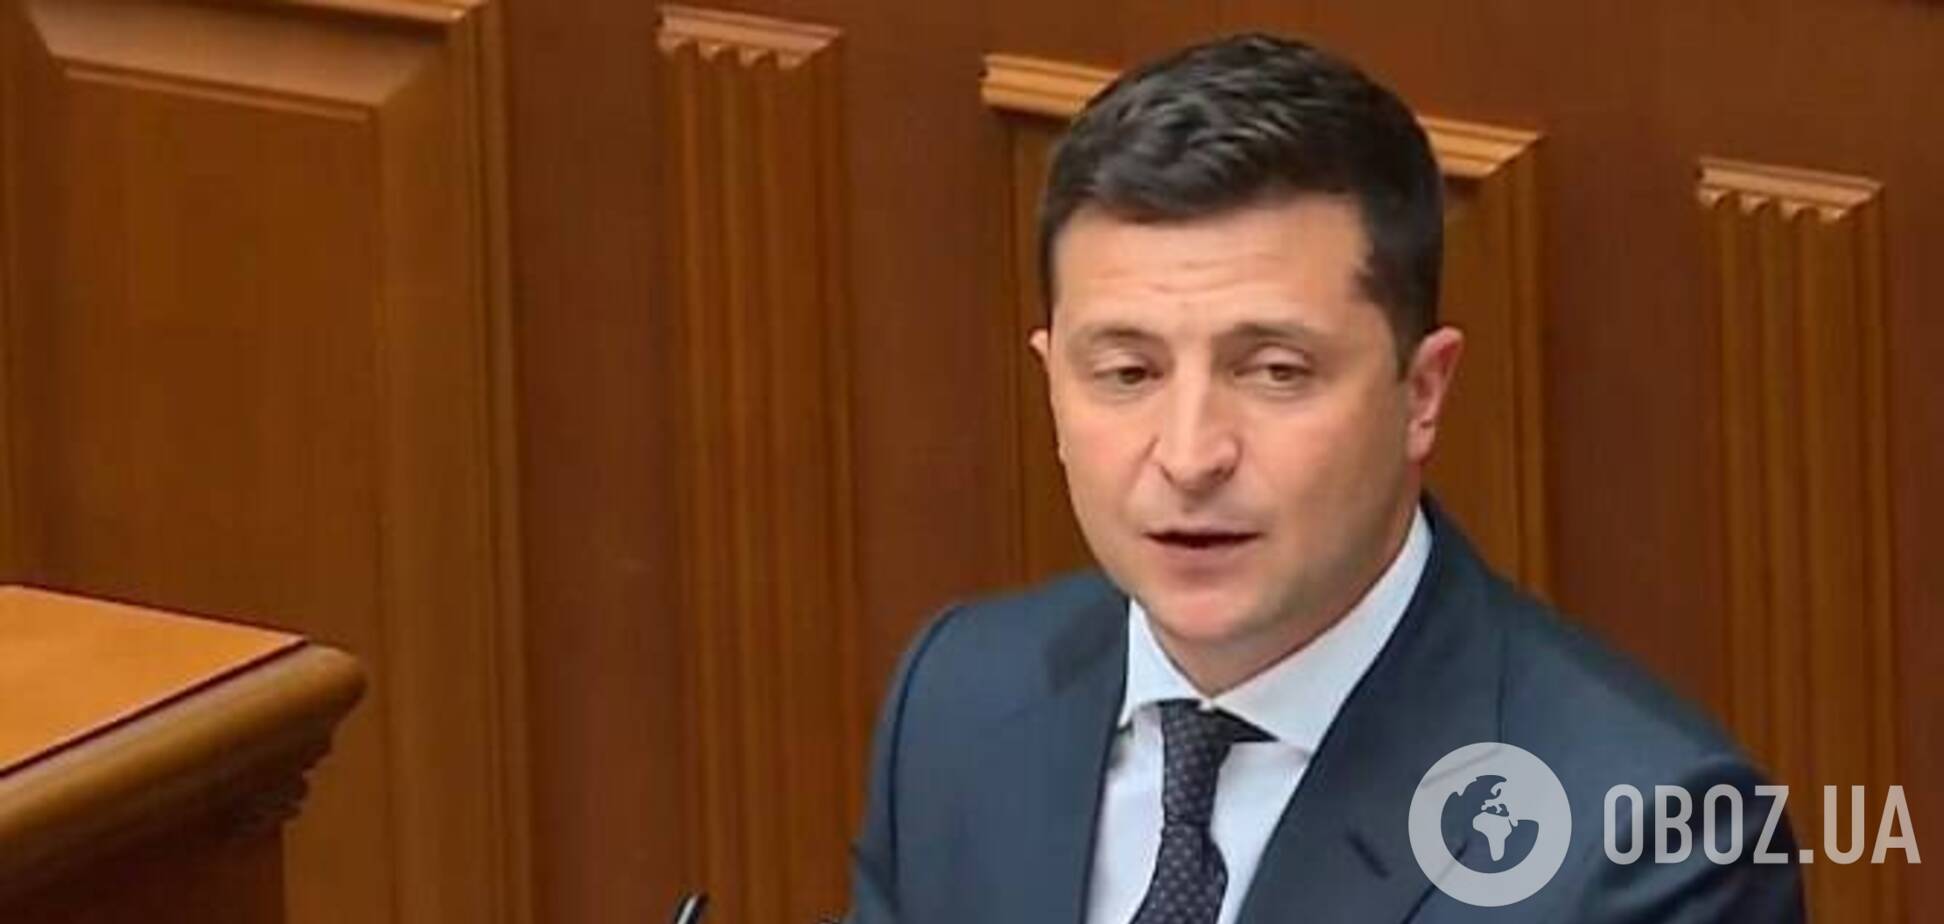 Зеленський виступив із трибуни перед Радою та президентами України